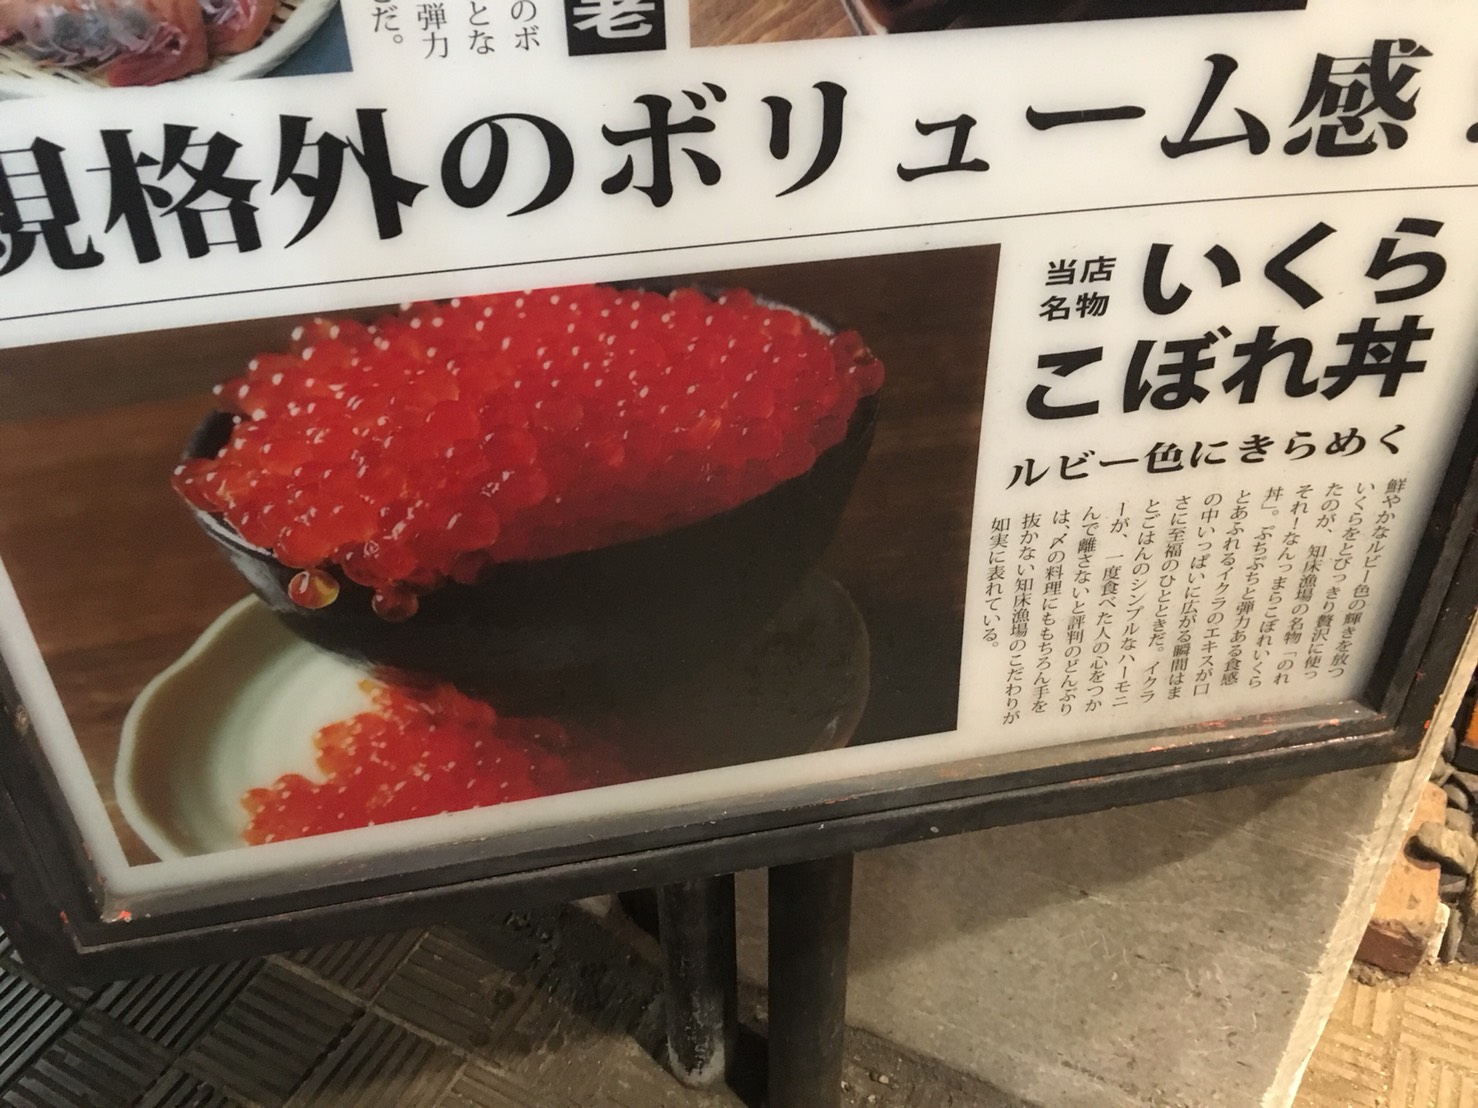 【池袋駅】いくらこぼれ丼を求めて「北海道知床漁場」のいくらこぼれ丼の看板